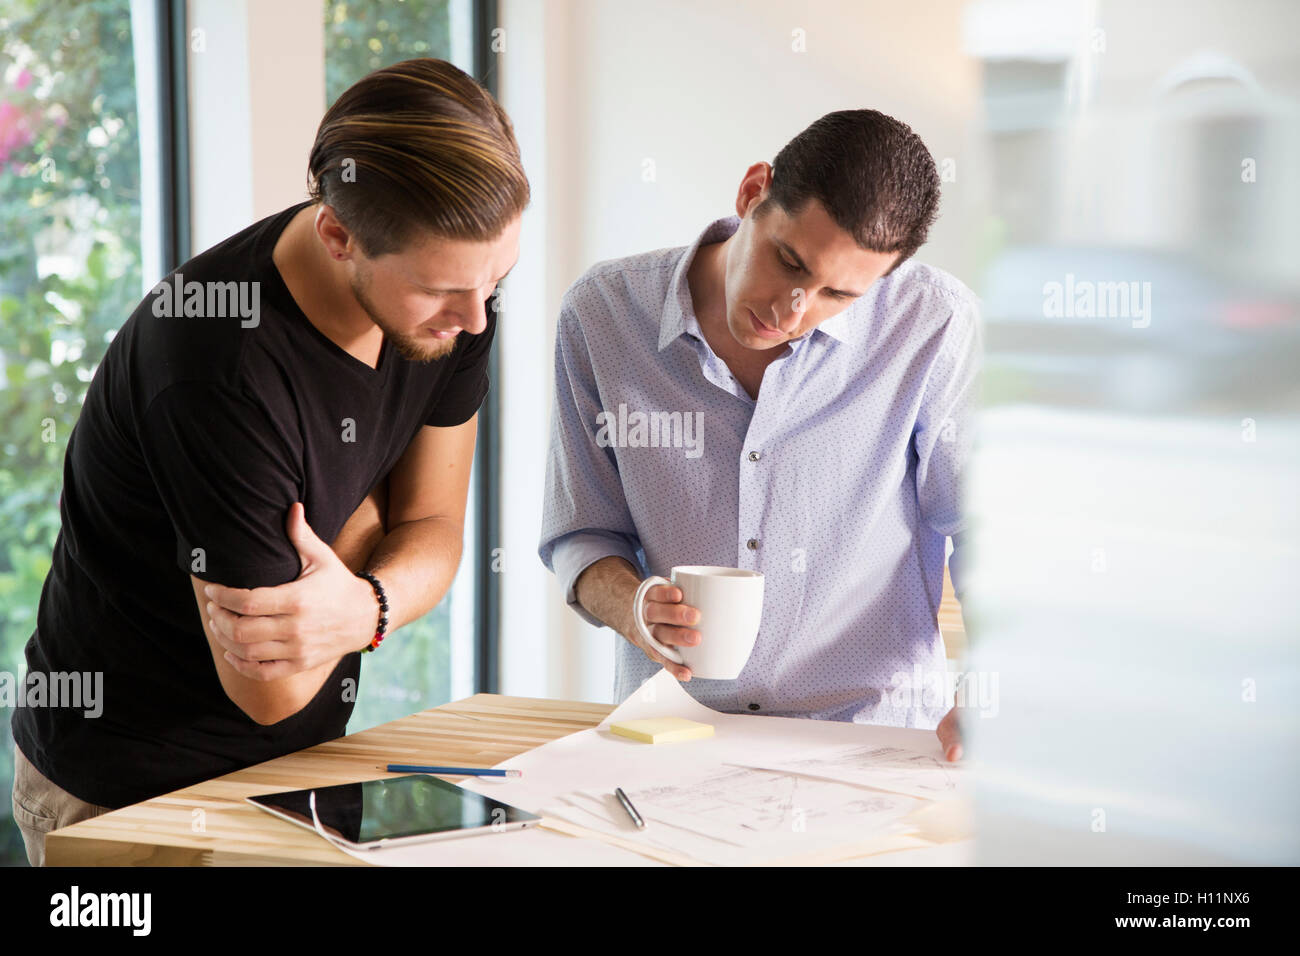 Zwei männliche Mitarbeiter in einem modernen Büro an Designs auf Papier zusammen Stockfoto